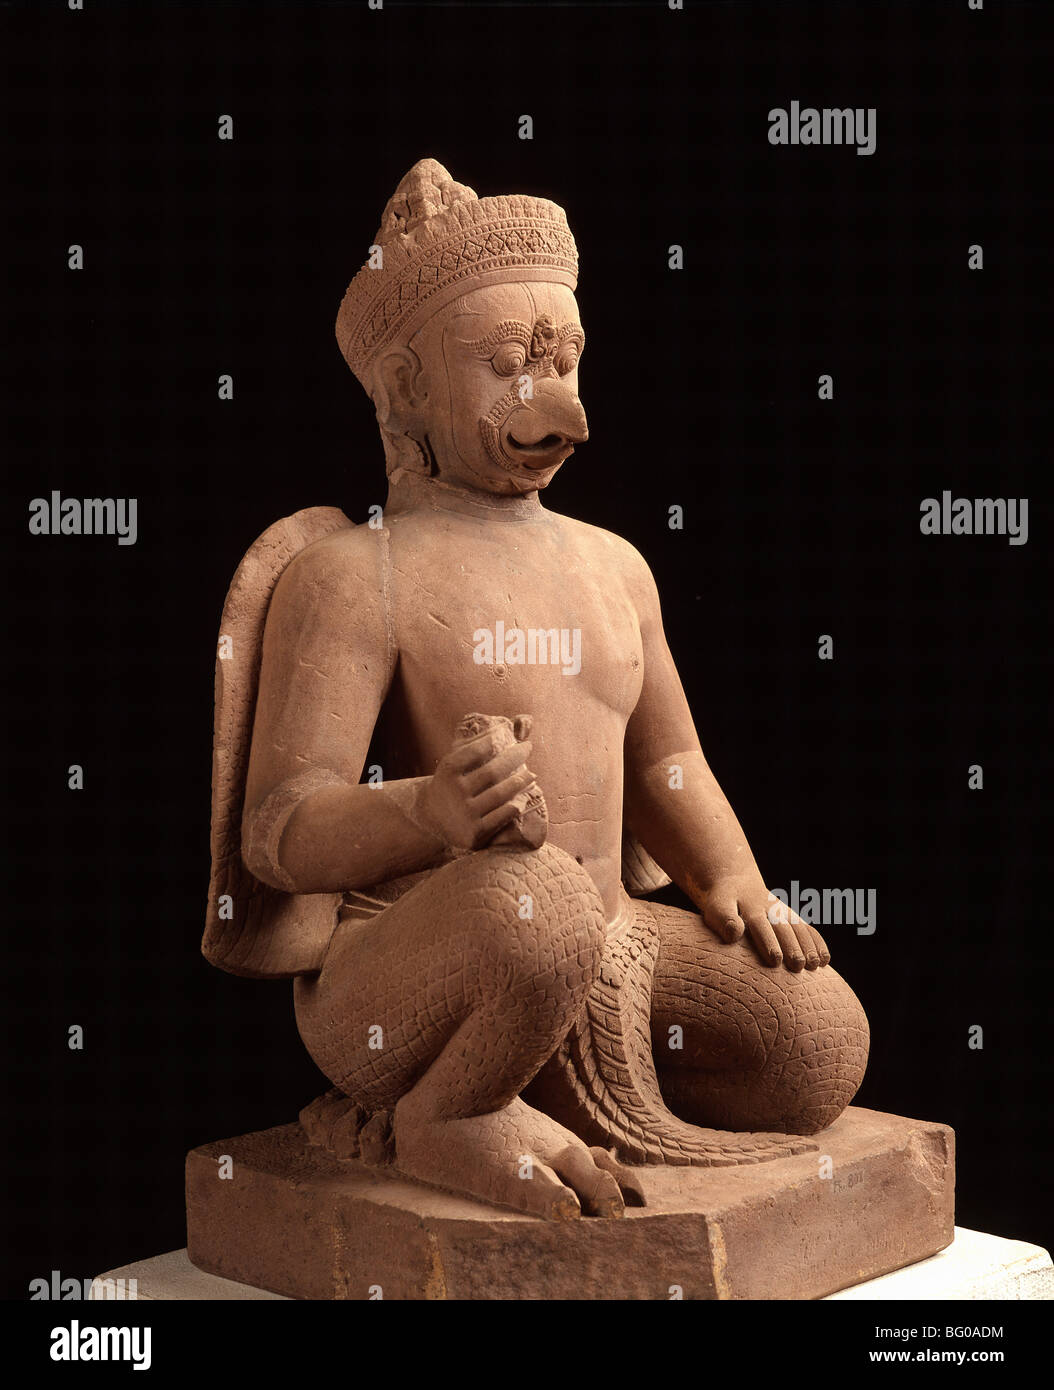 Statue von Garuda aus Bantay Srei, stammt aus dem 10. Jahrhundert, National Museum, Phnom Penh, Kambodscha, Indochina, Asien Stockfoto